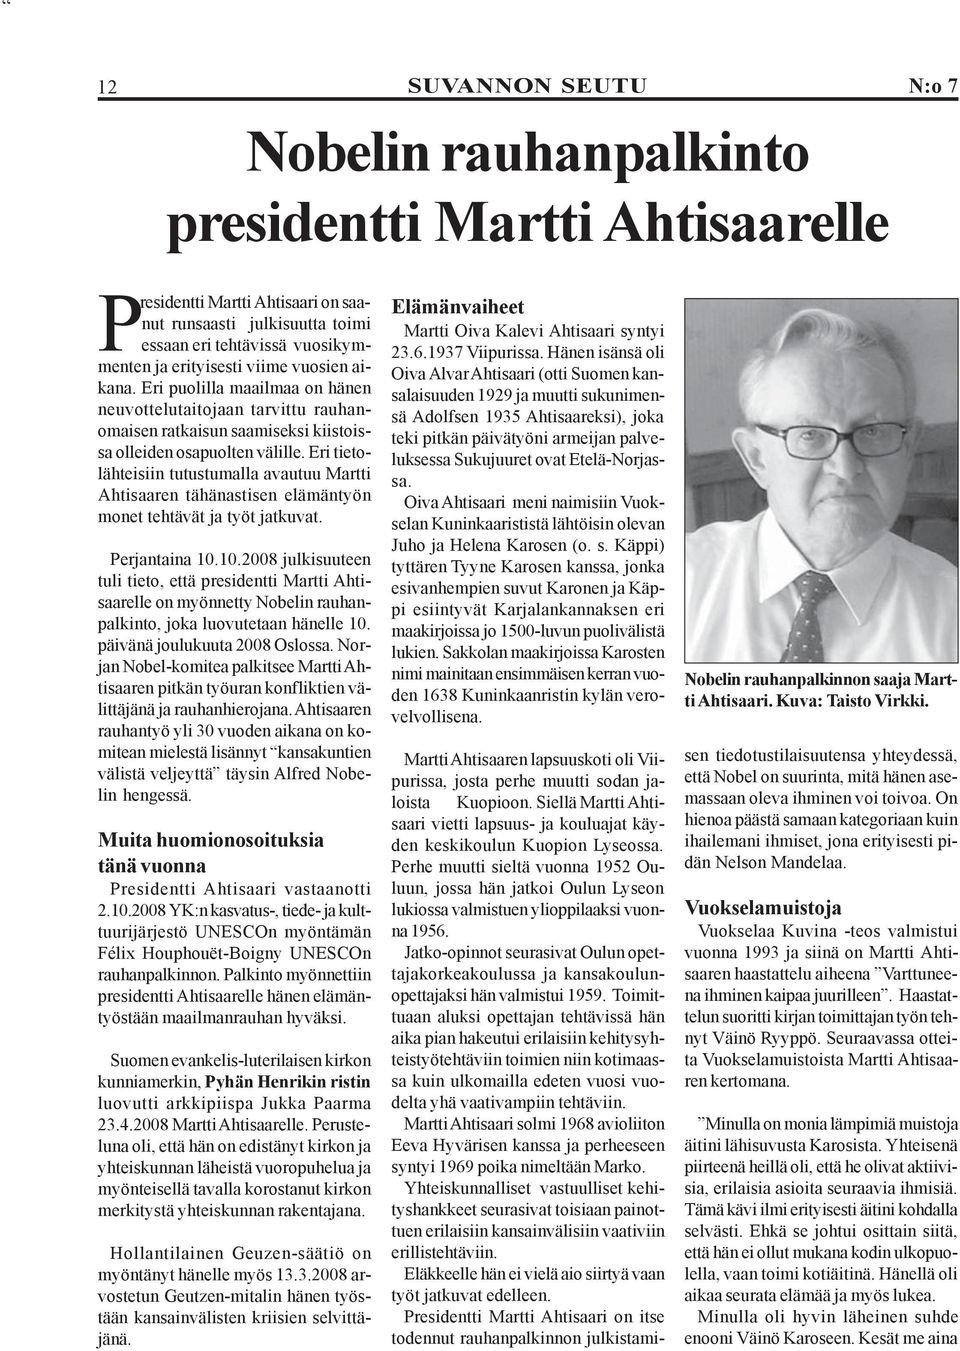 Eri tietolähteisiin tutustumalla avautuu Martti Ahtisaaren tähänastisen elämäntyön monet tehtävät ja työt jatkuvat. Perjantaina 10.